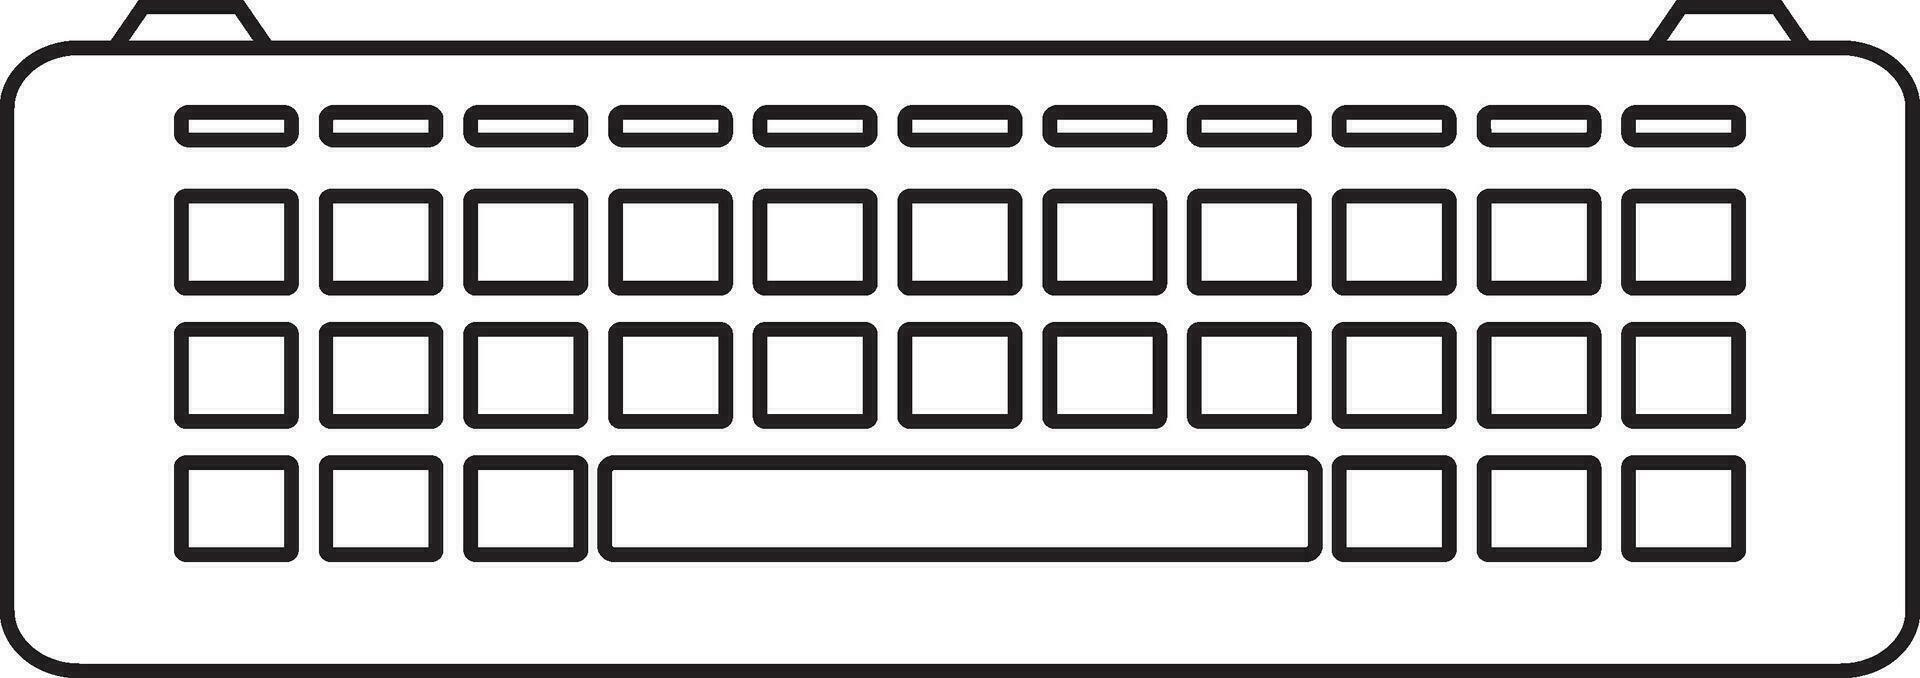 Black line art keyboard in flat style. vector